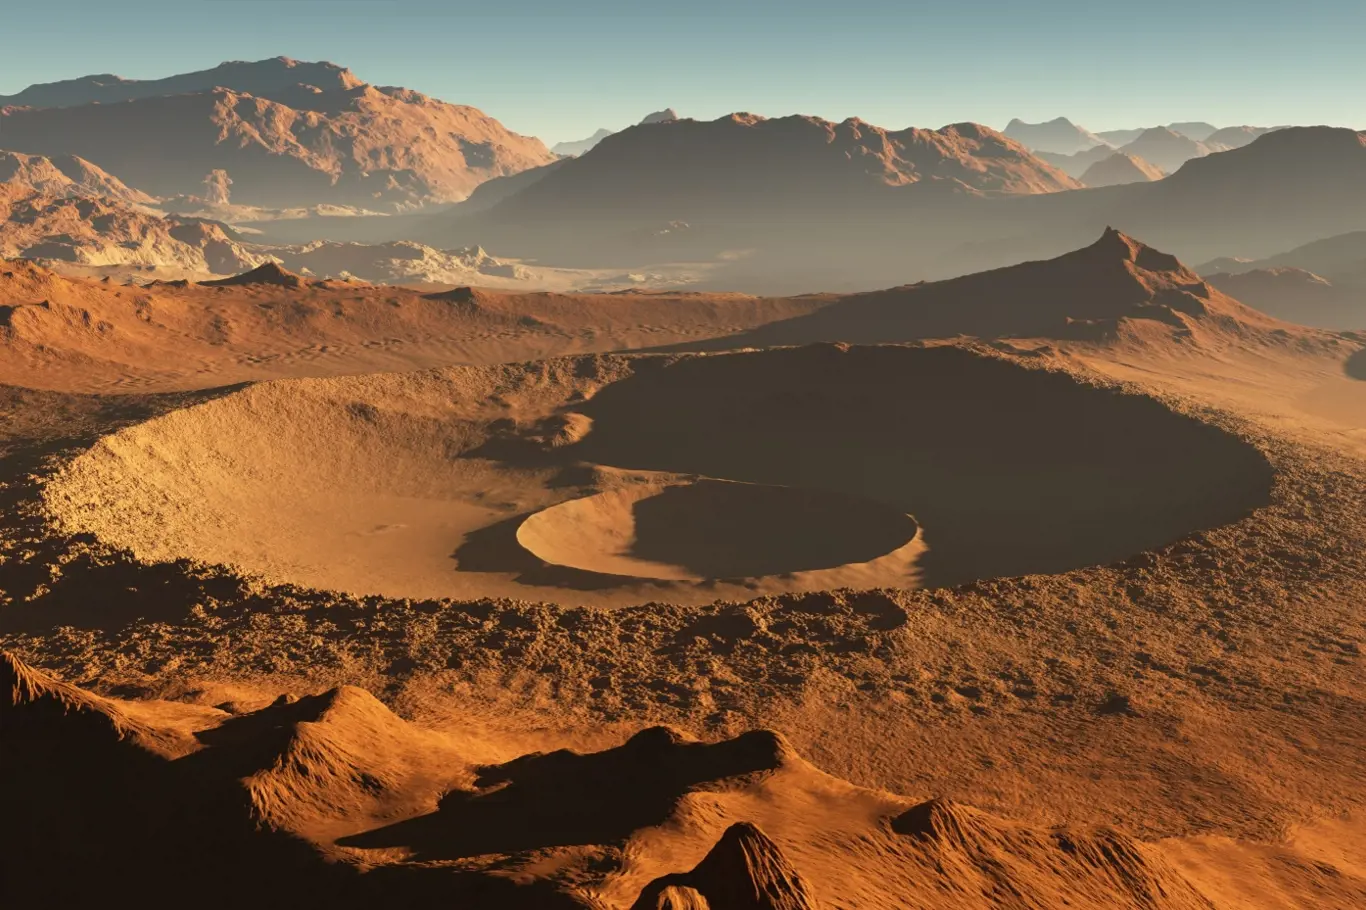 Západ slunce na Marsu. Marťanská krajina, impaktní krátery na Marsu. 3D ilustrace